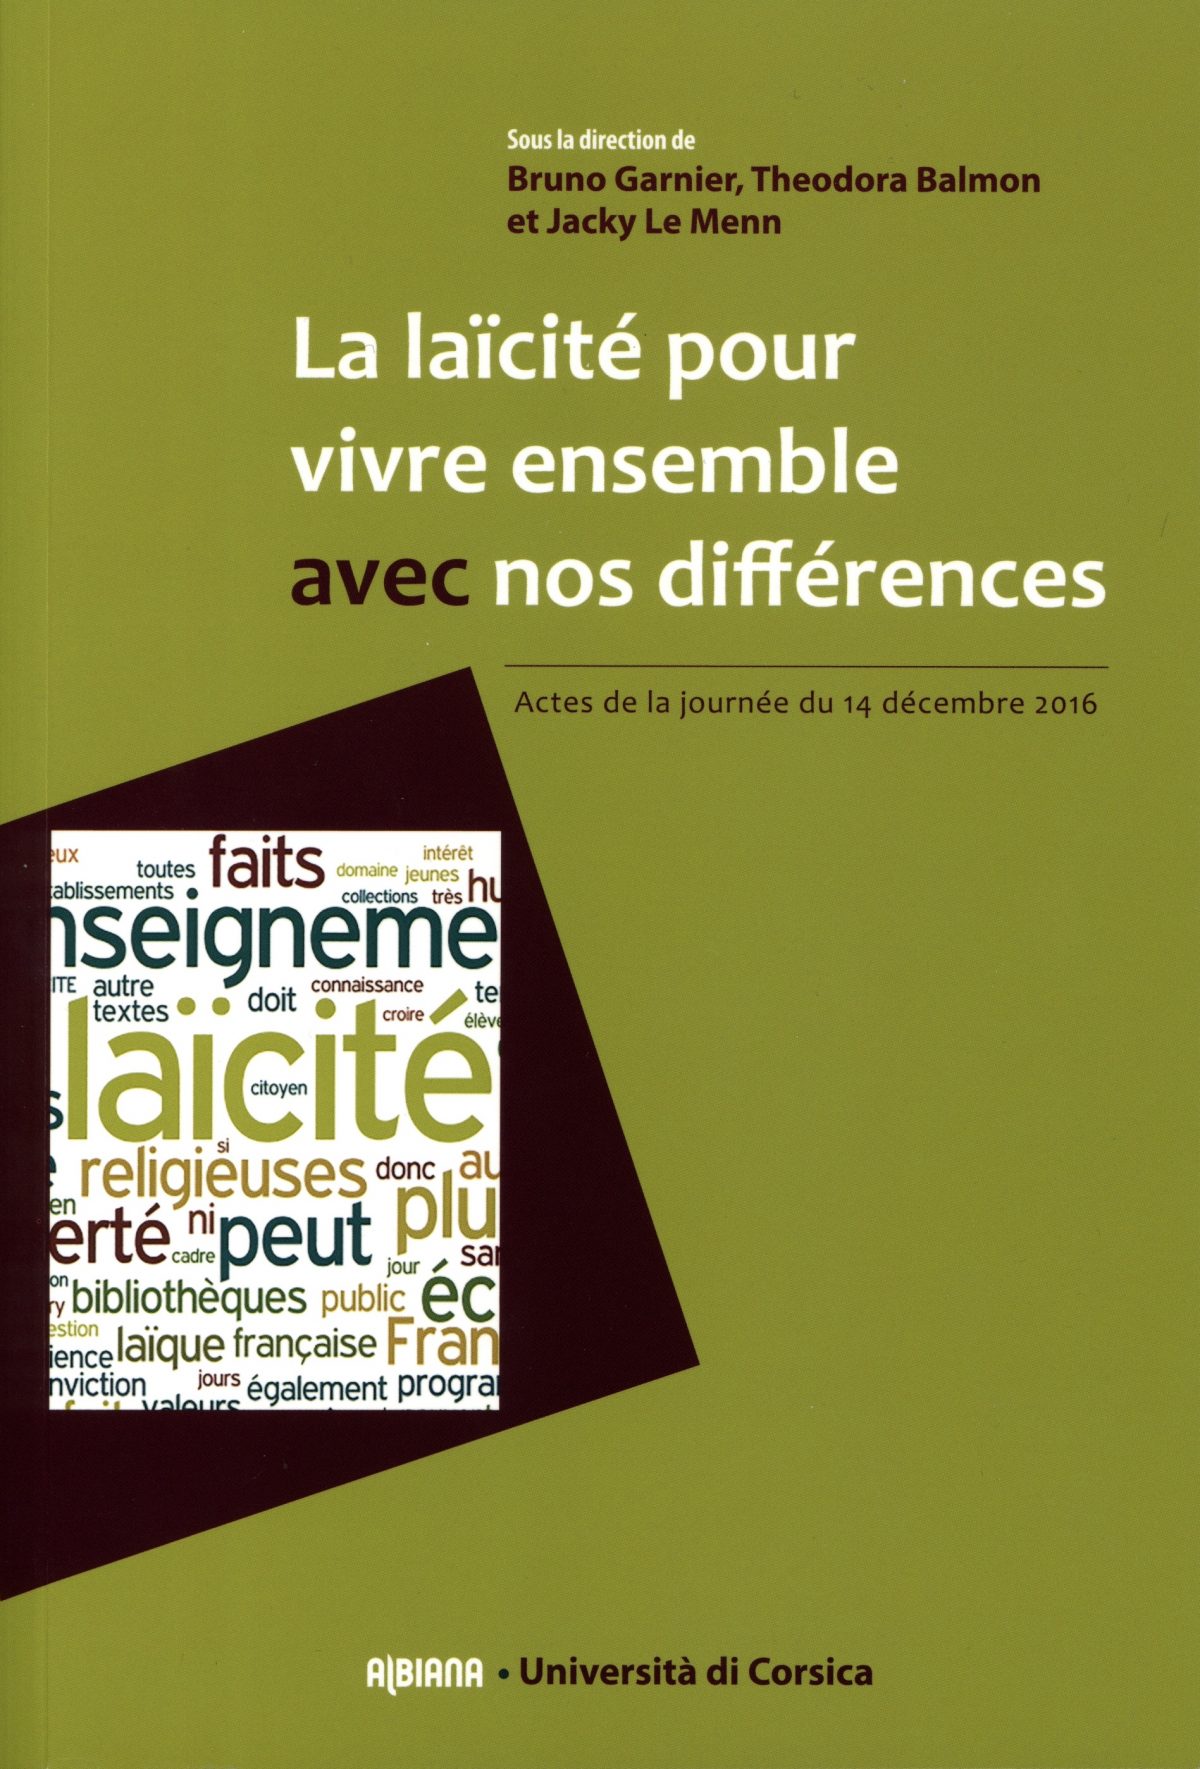 La laïcité pour vivre ensemble avec nos différences, Ajaccio : Editions Albiana, 2017.